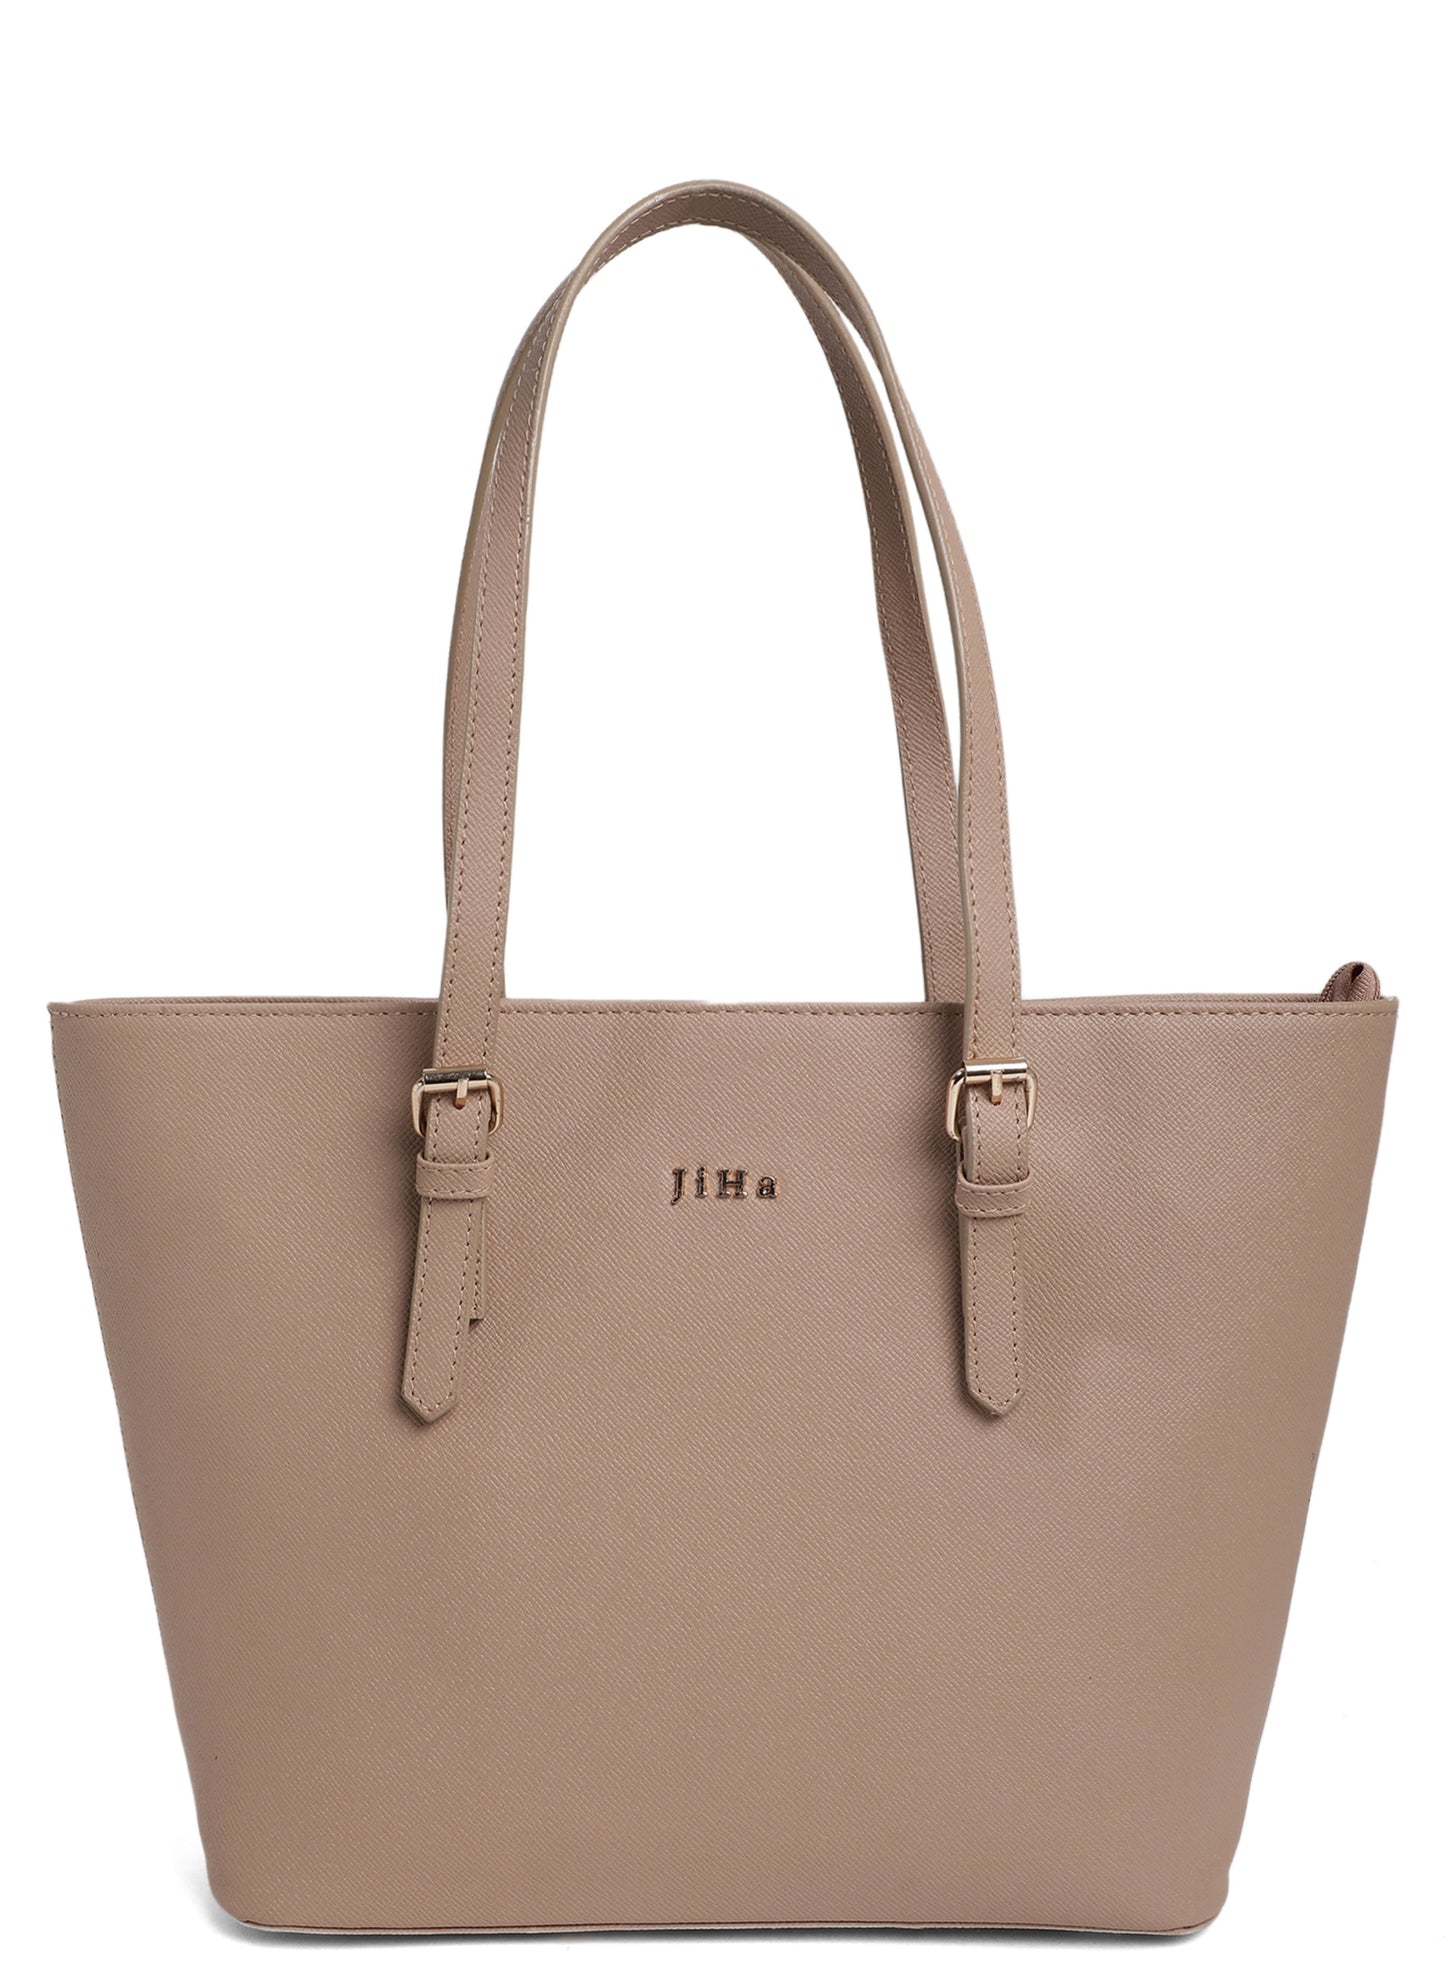 Jiha Premium Nude Tote Bag Shoulder Bag